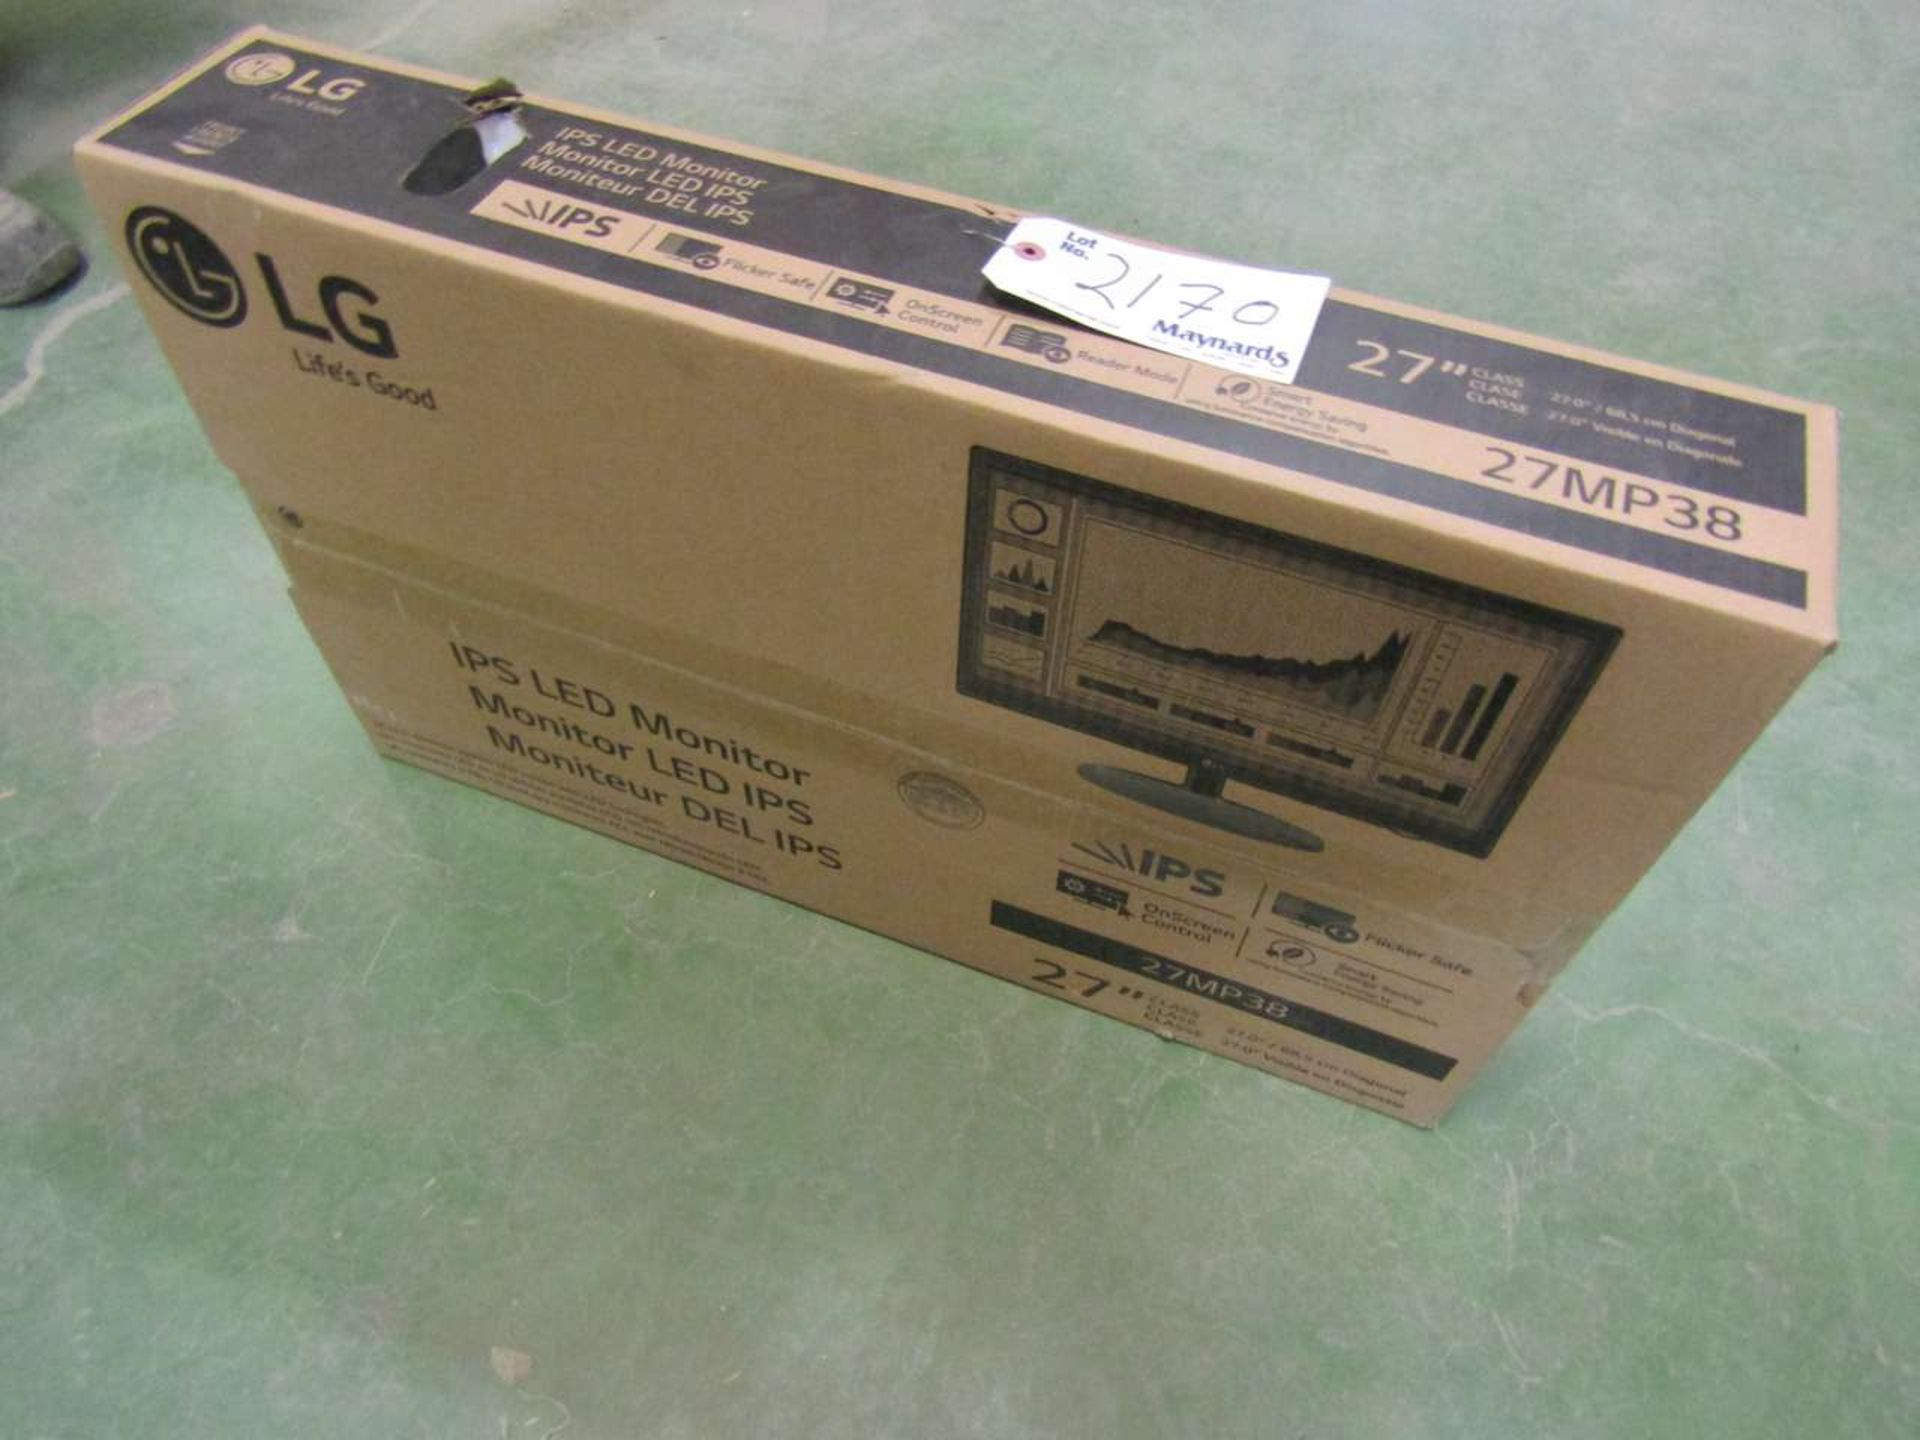 LG 27MP38 27" LED Monitor